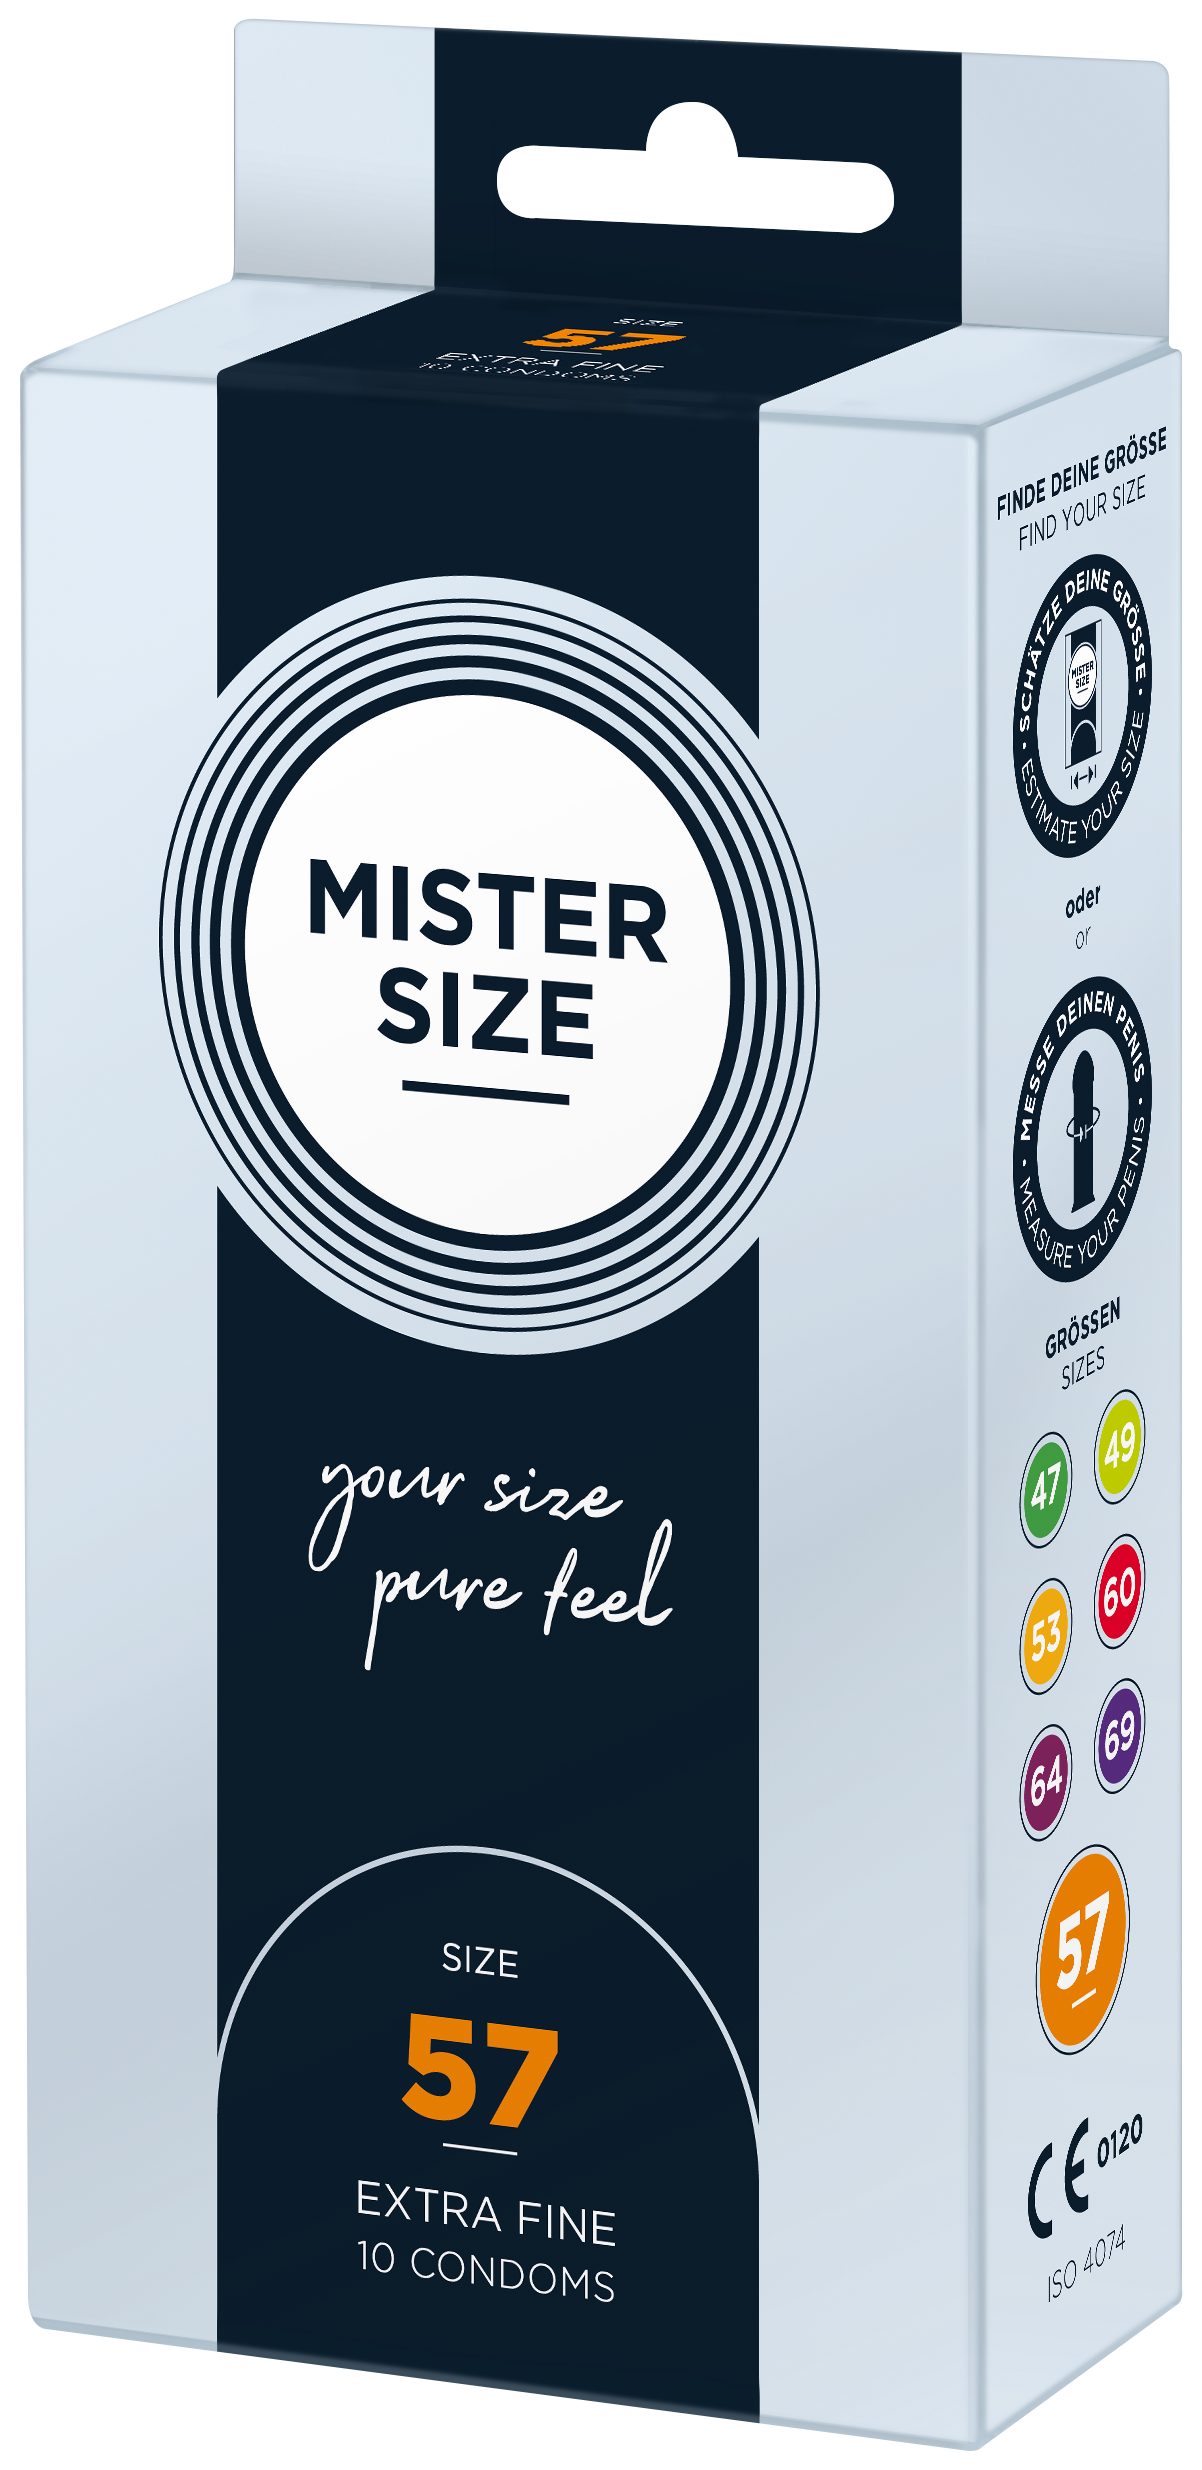 & gefühlsecht Nominale SIZE Kondome feucht Breite MISTER Stück, 10 57mm,